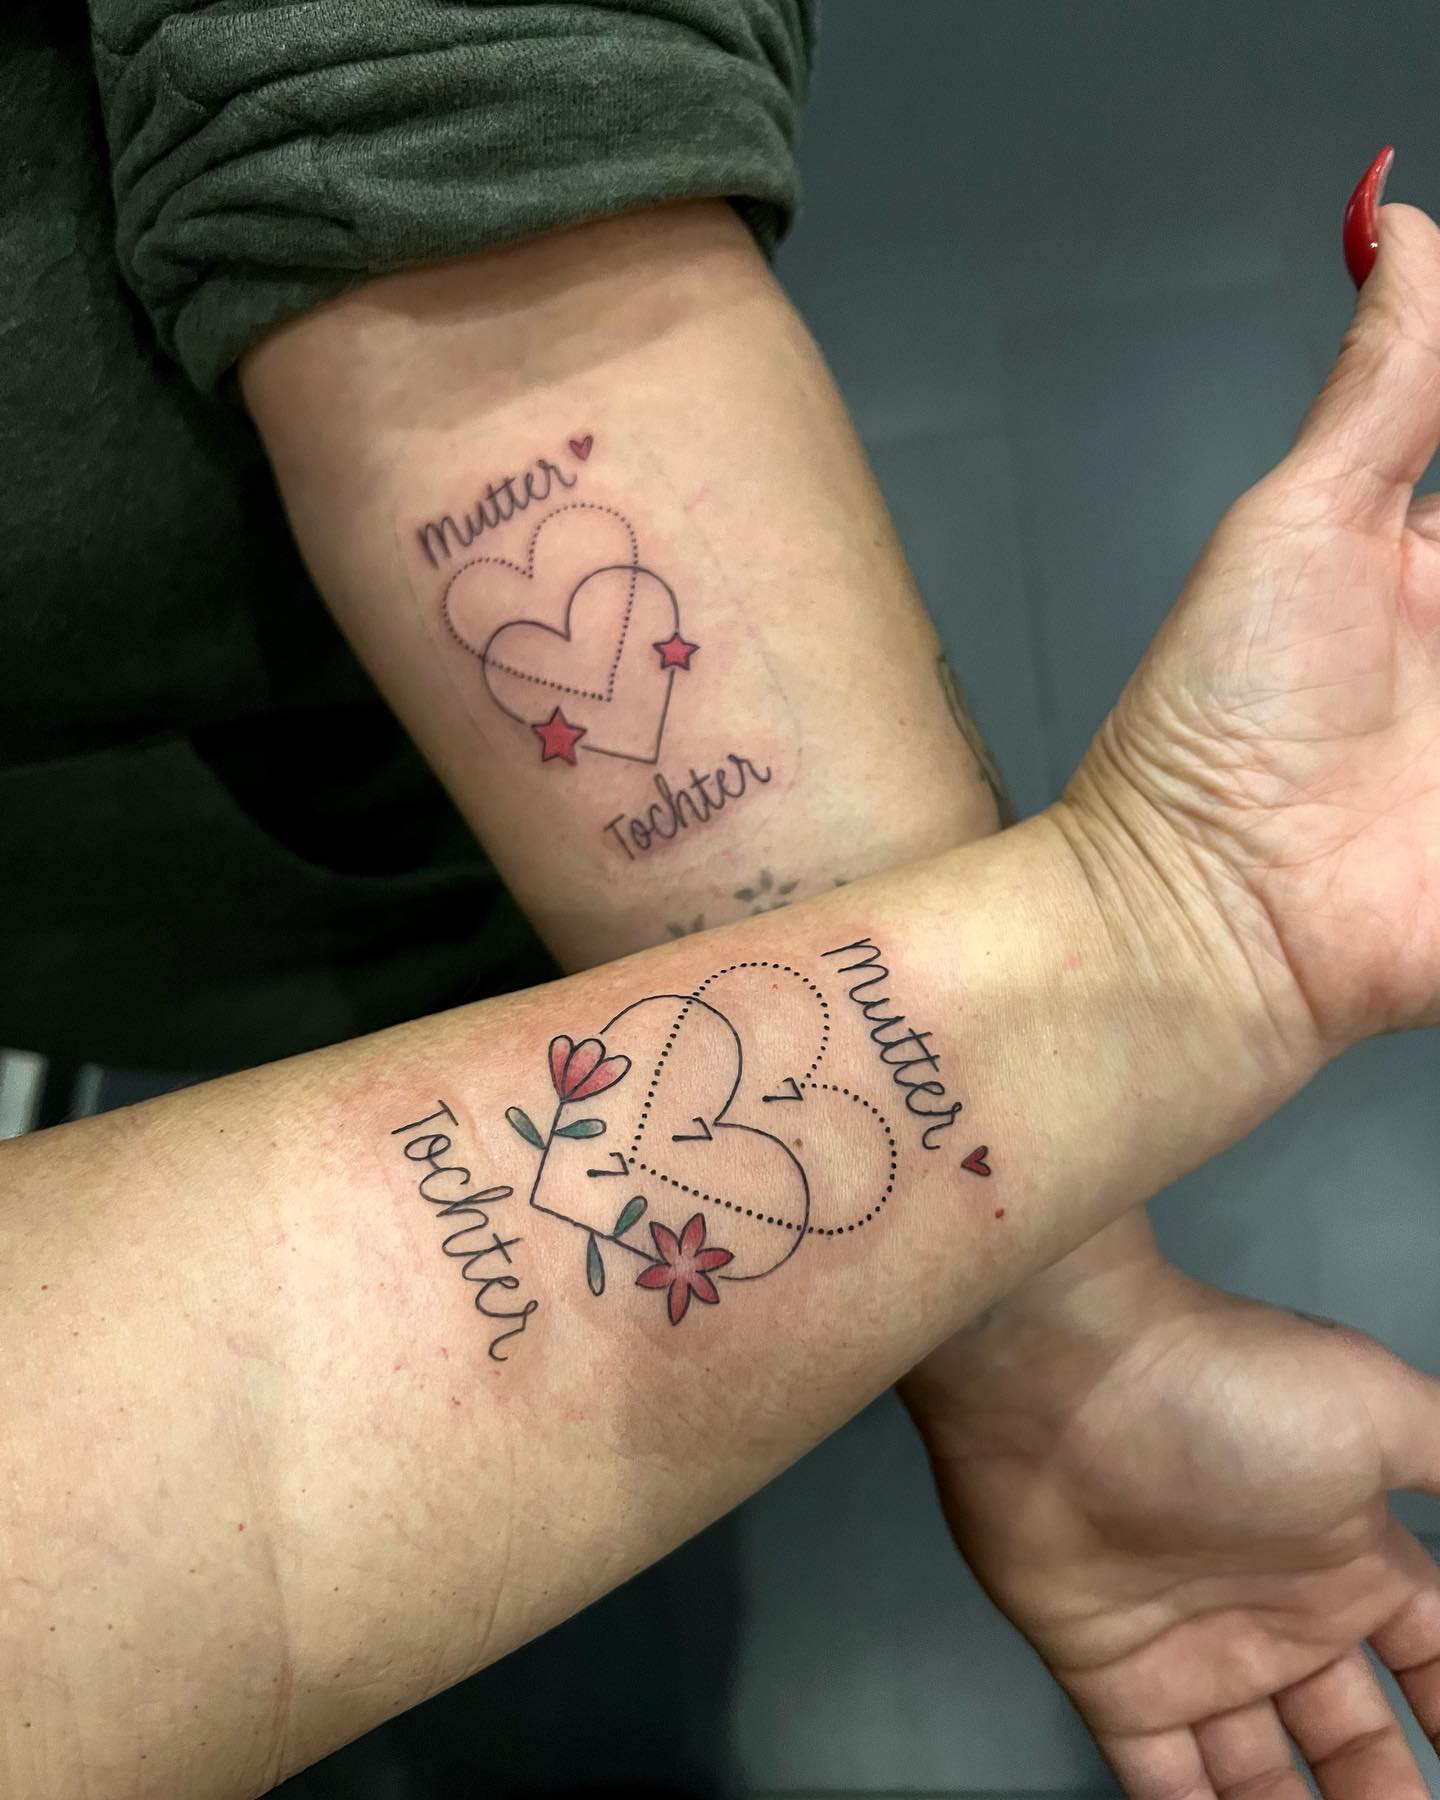 MUTTER  TOCHTER
.
#partnertattoo #momanddaughter #tattooideas #tattoo #finelinet